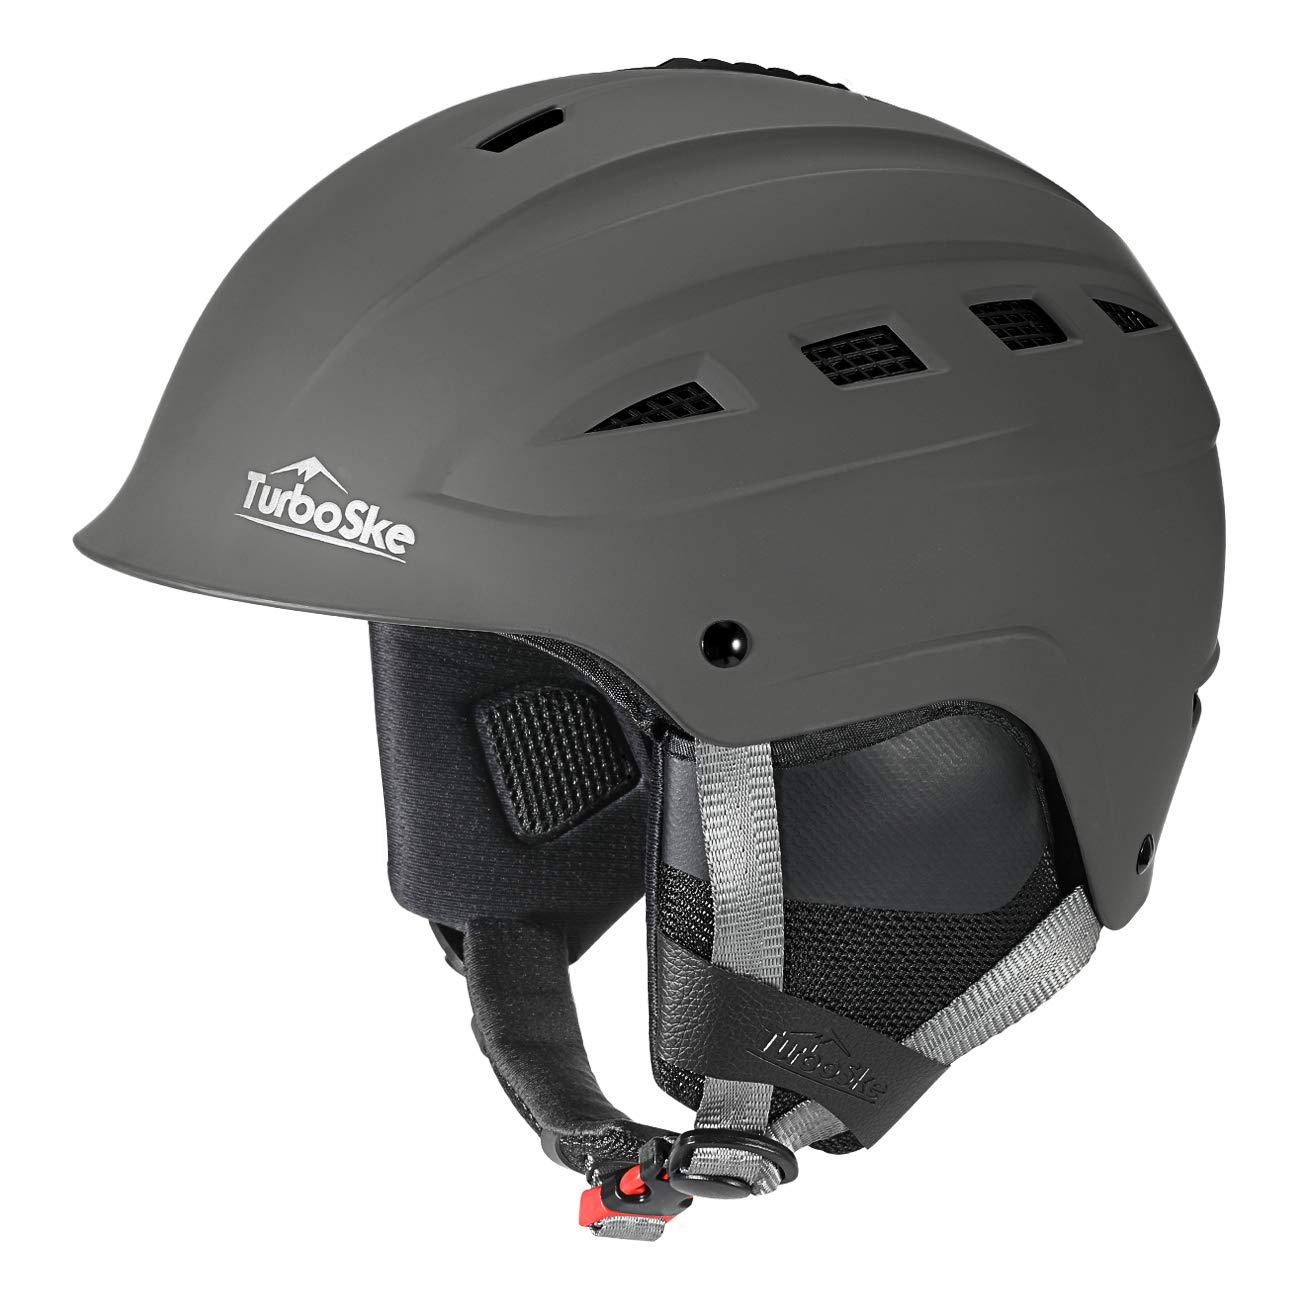 TurboSke ABS Adult Ski Helmet